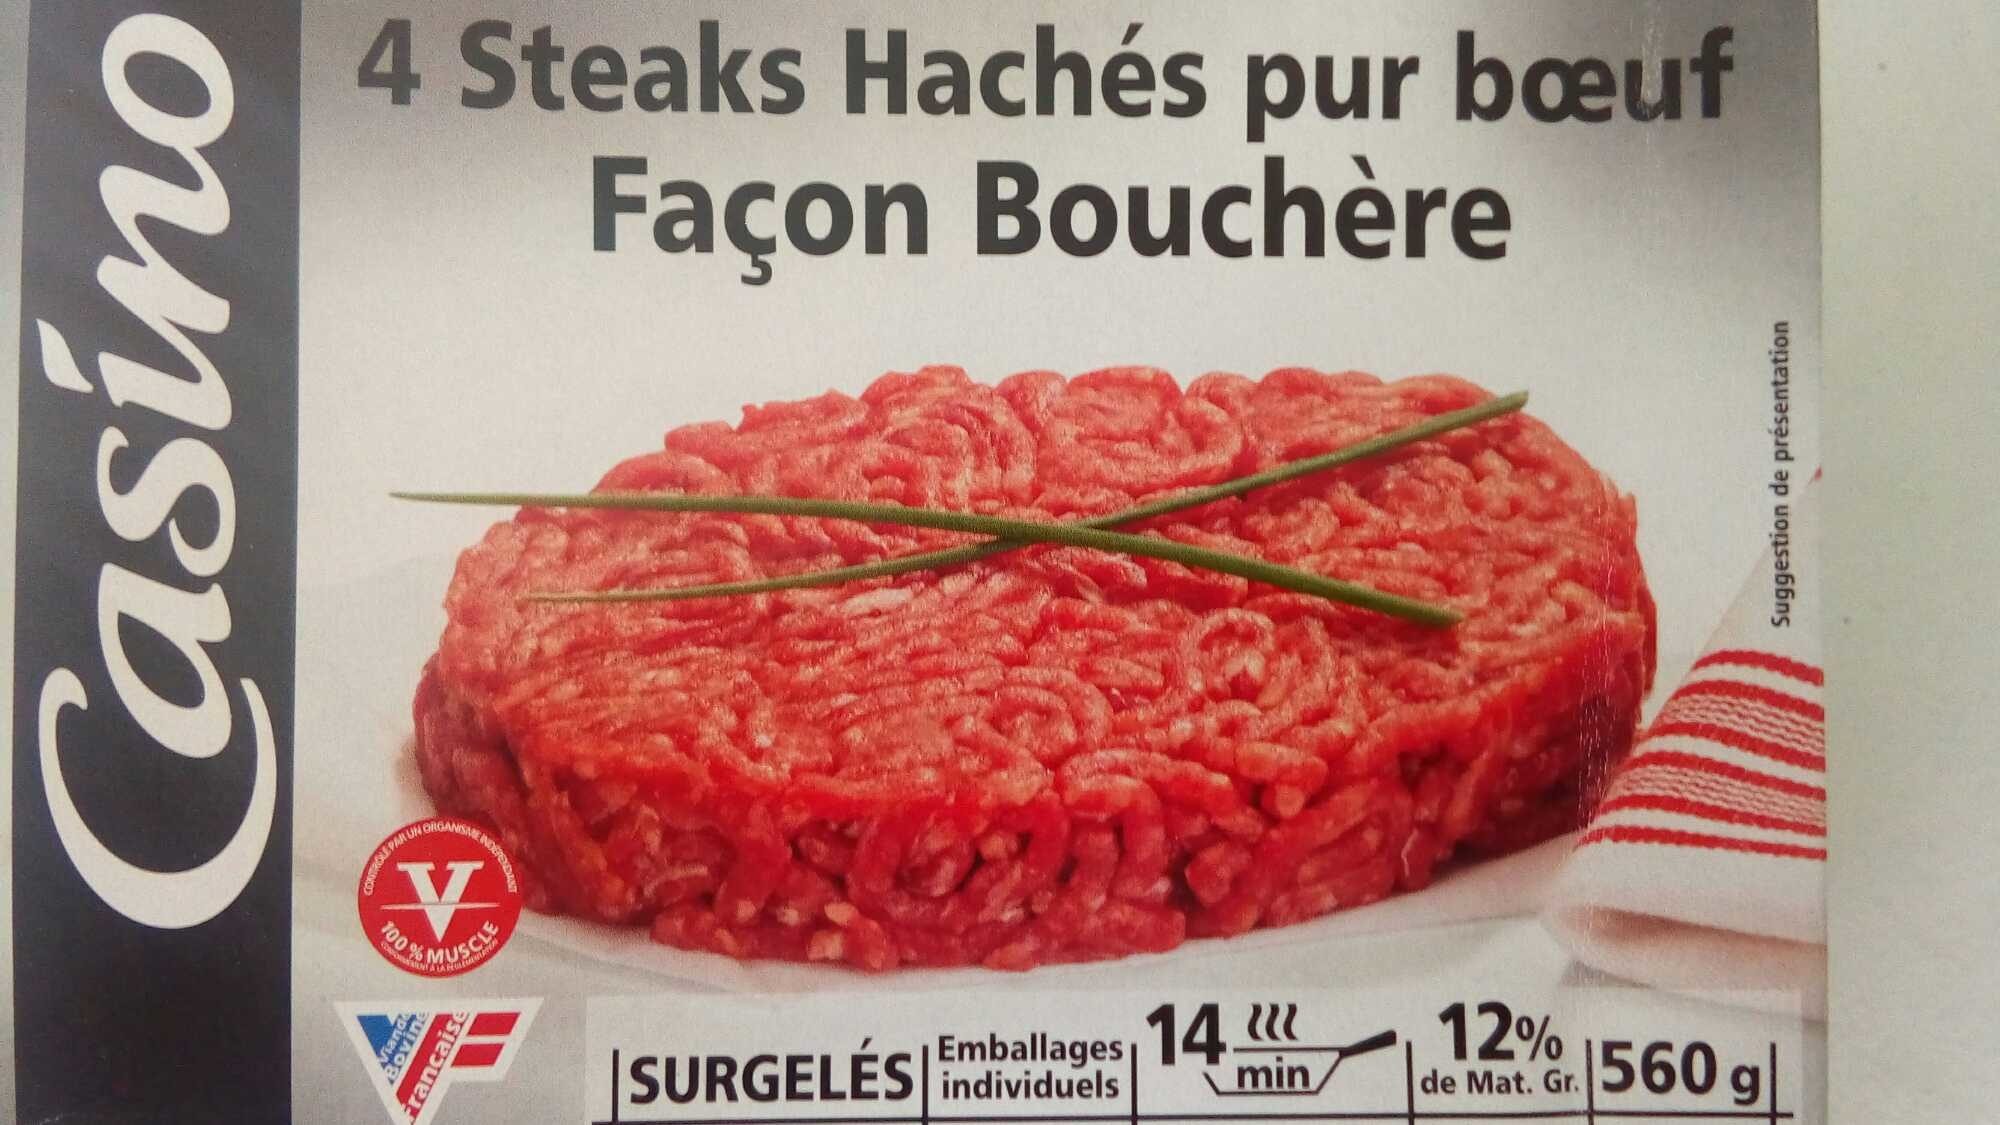 4 steaks hachés pur boeuf façon bouchère - Product - fr